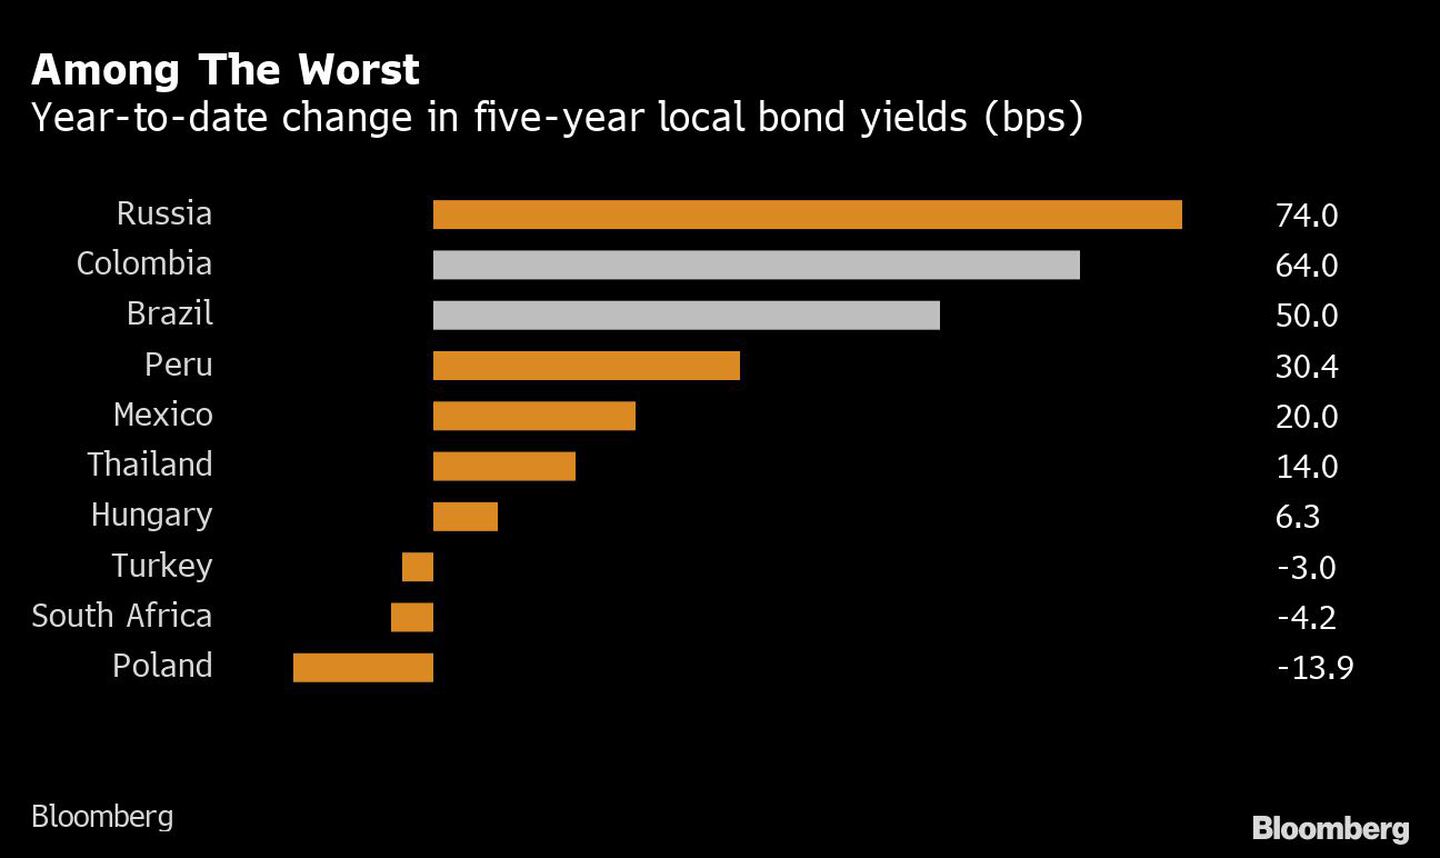 Entre los peores
Variación anual de los rendimientos de los bonos locales a cinco años (bps)